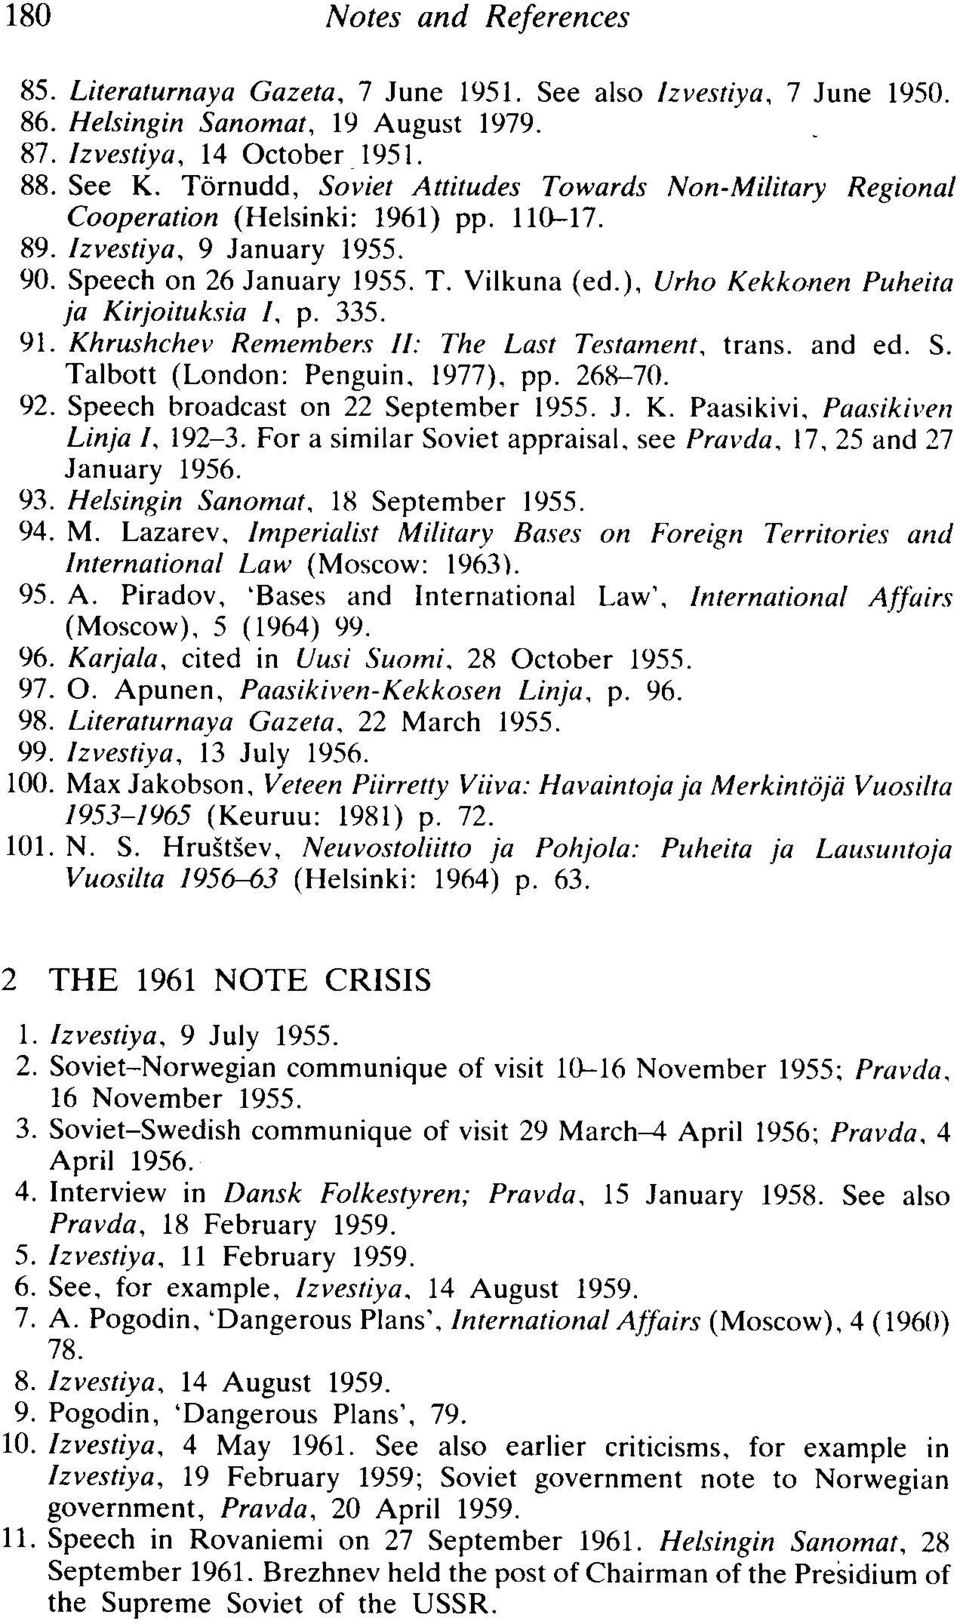 ), Vrh o Kekkon en Puheita ja Kirjoituksia I, p. 335. 91. Khru shchev Rem embers 1/: Th e Last Testam ent, trans. and ed. S. Talbott (London: Penguin. 1977). pp. 268-70. 92.